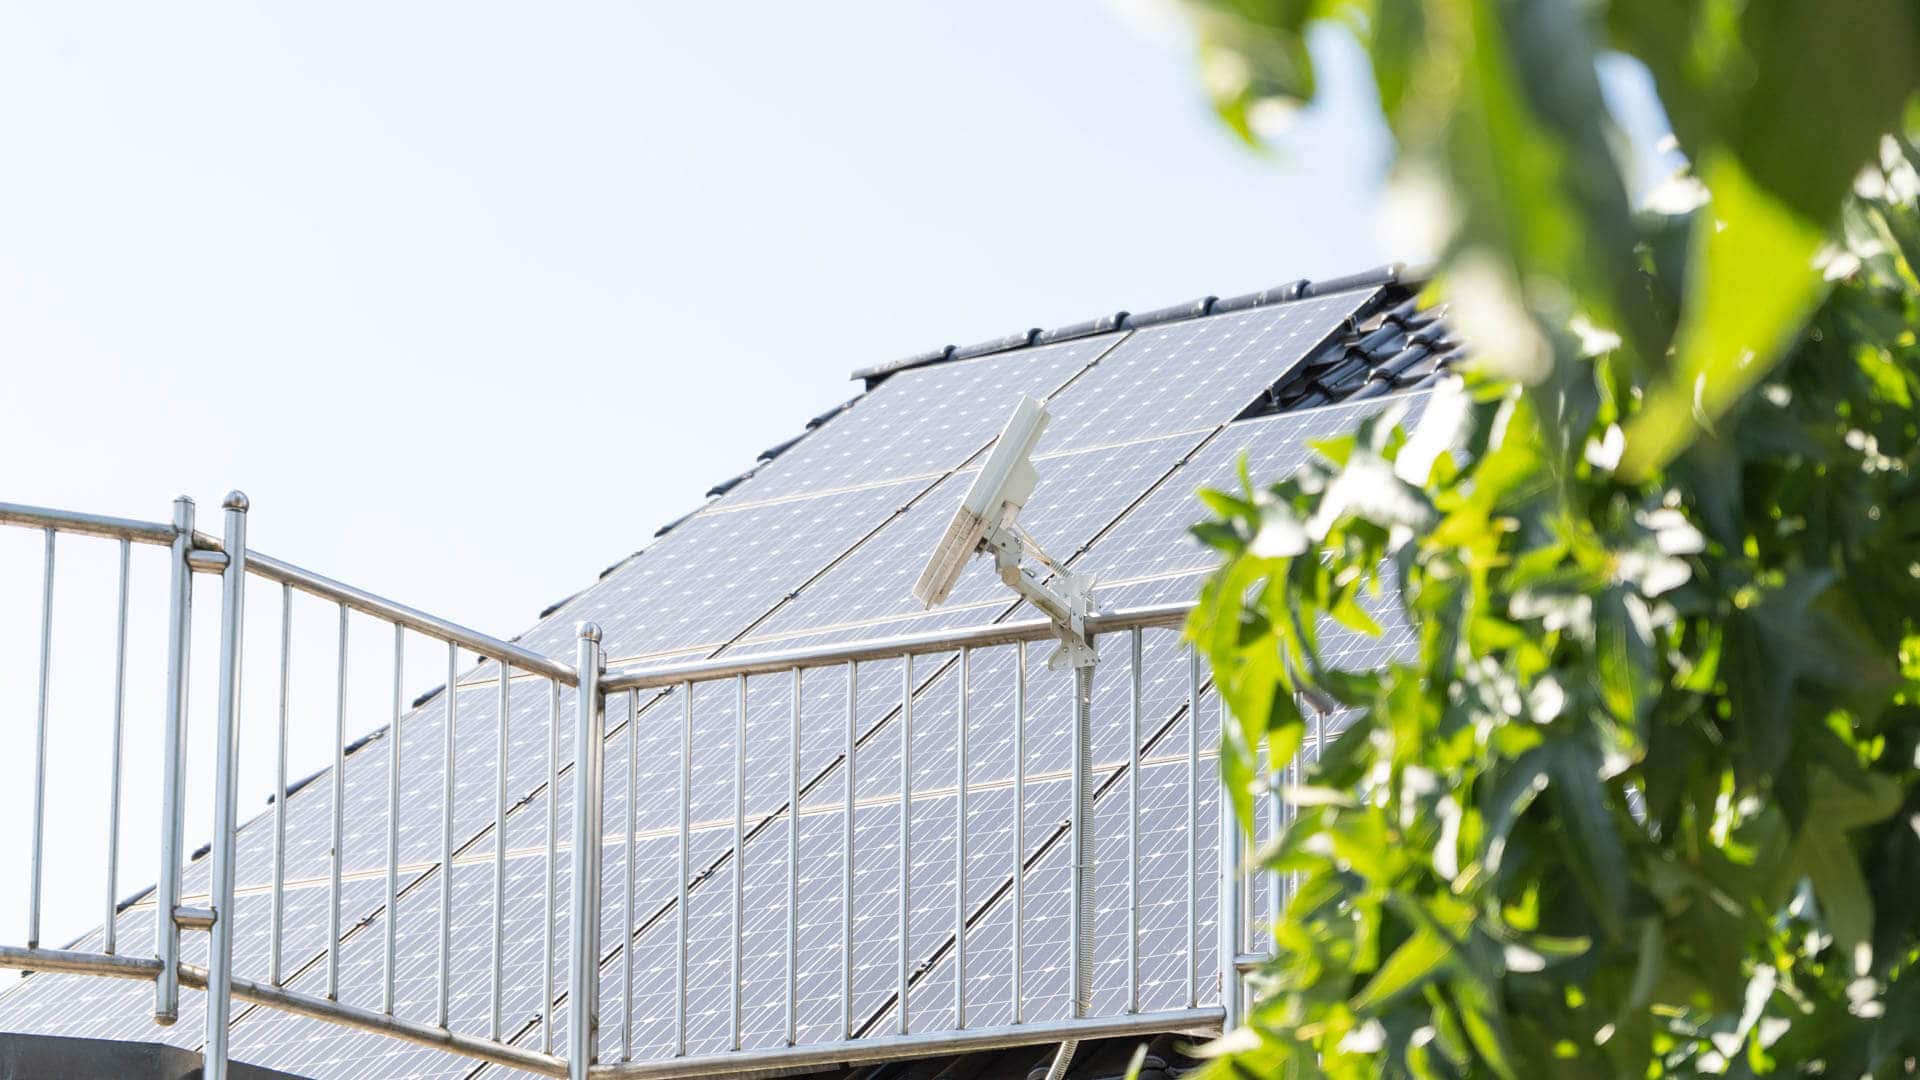 Detailaufnahme einer Photovoltaik Solaranlage auf dem Dach eines Zweifamilienhauses